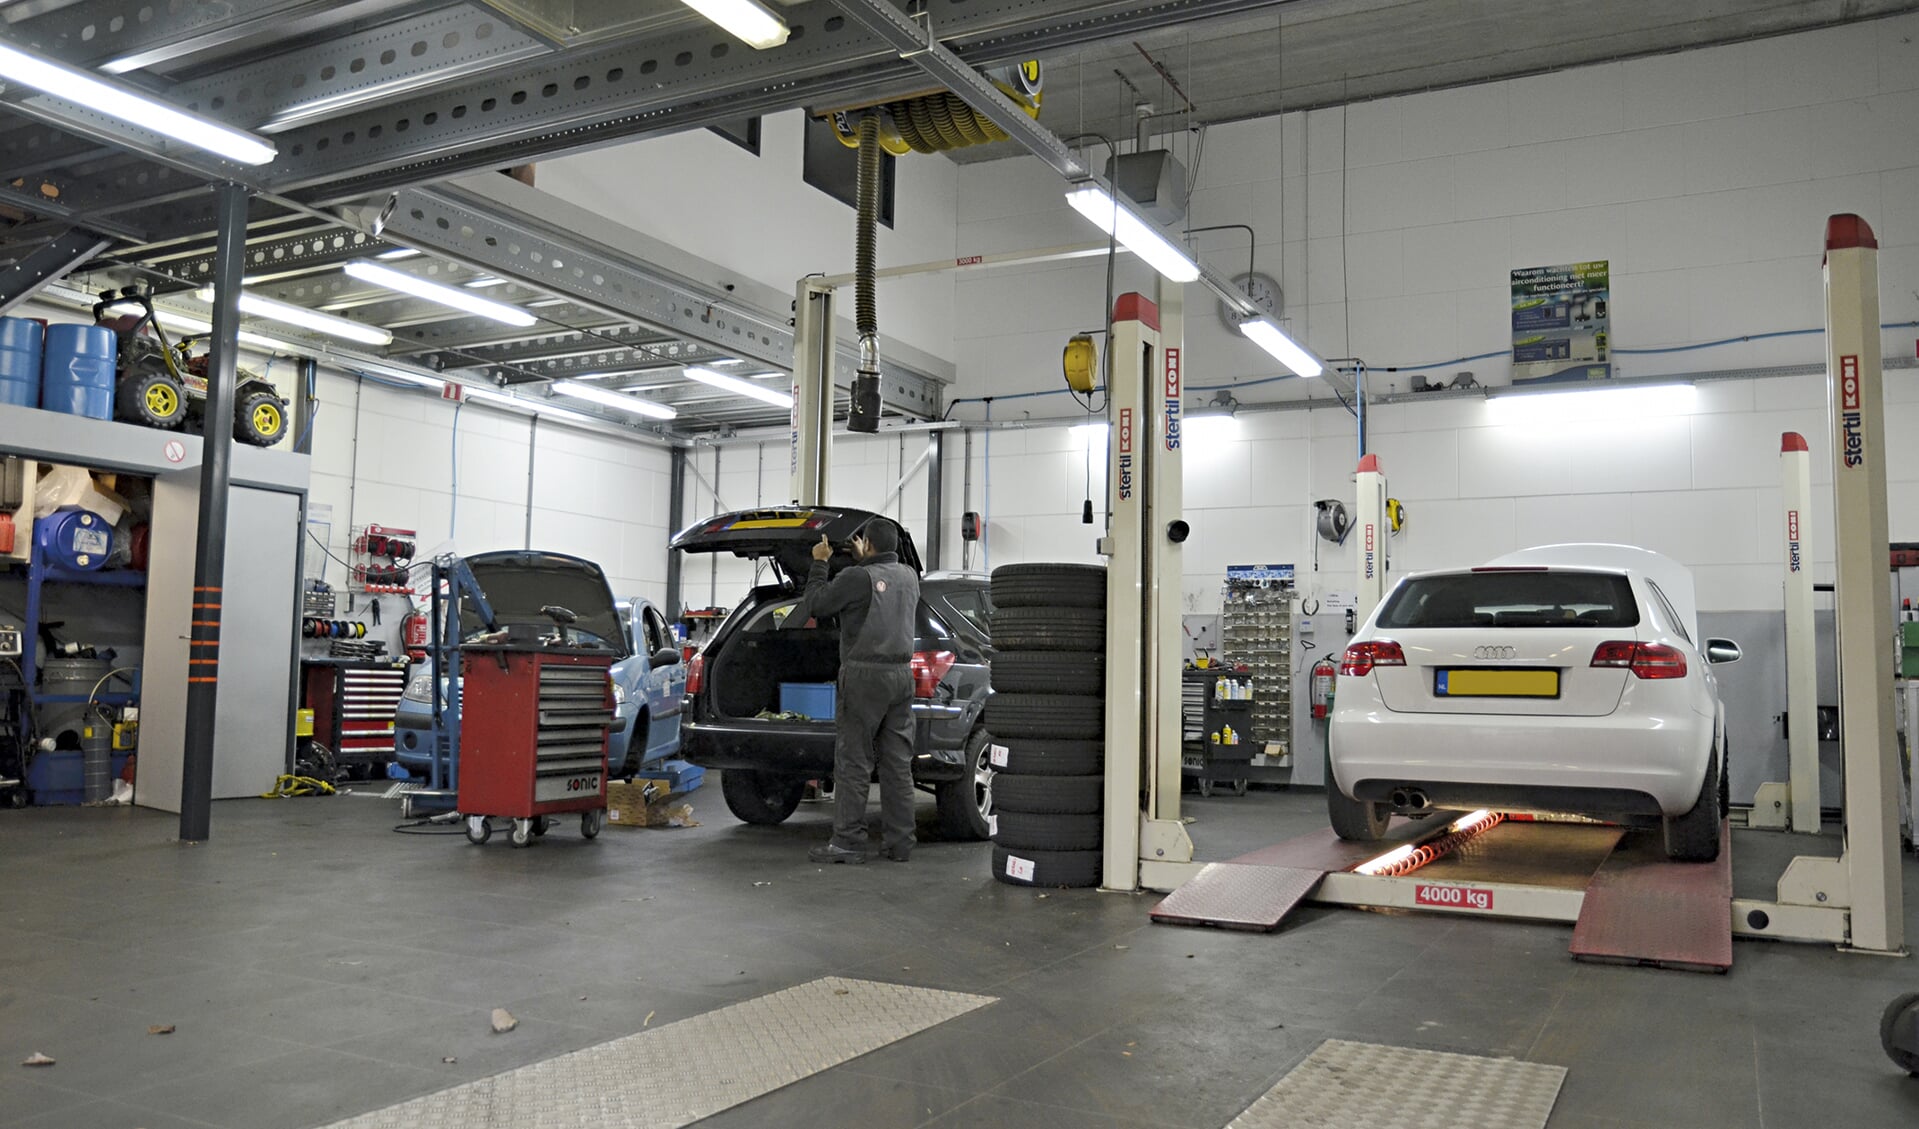 Het bedrijfspand van Autobedrijf Harnaschpoort, met drie bruggen voor het onderhoud of reparatie aan uw auto.